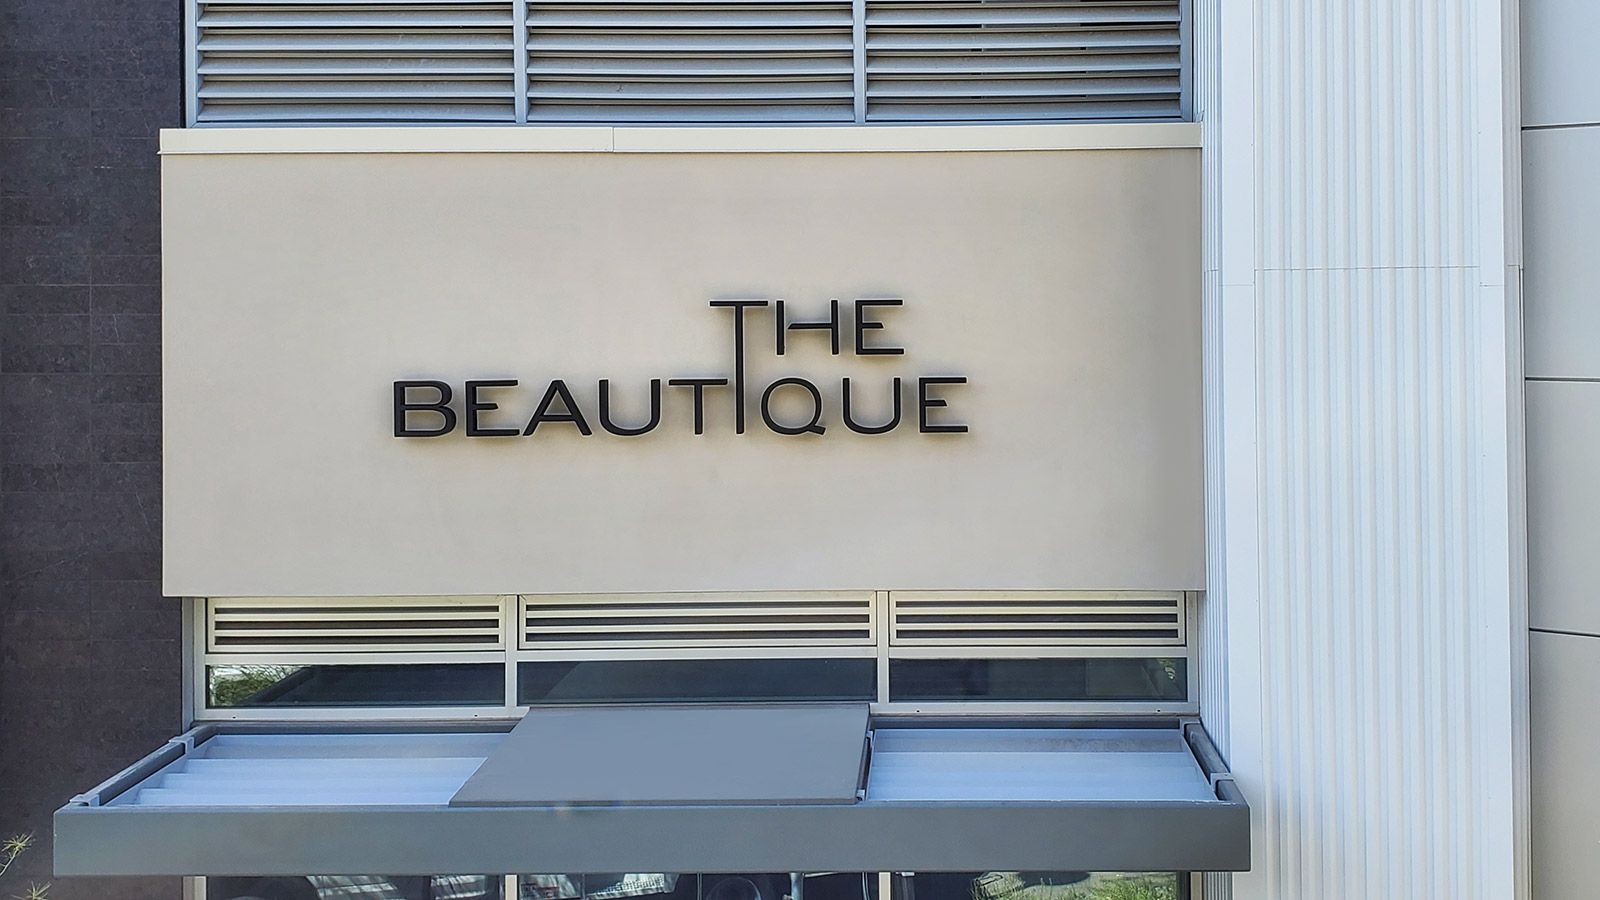 The beautique backlit letters